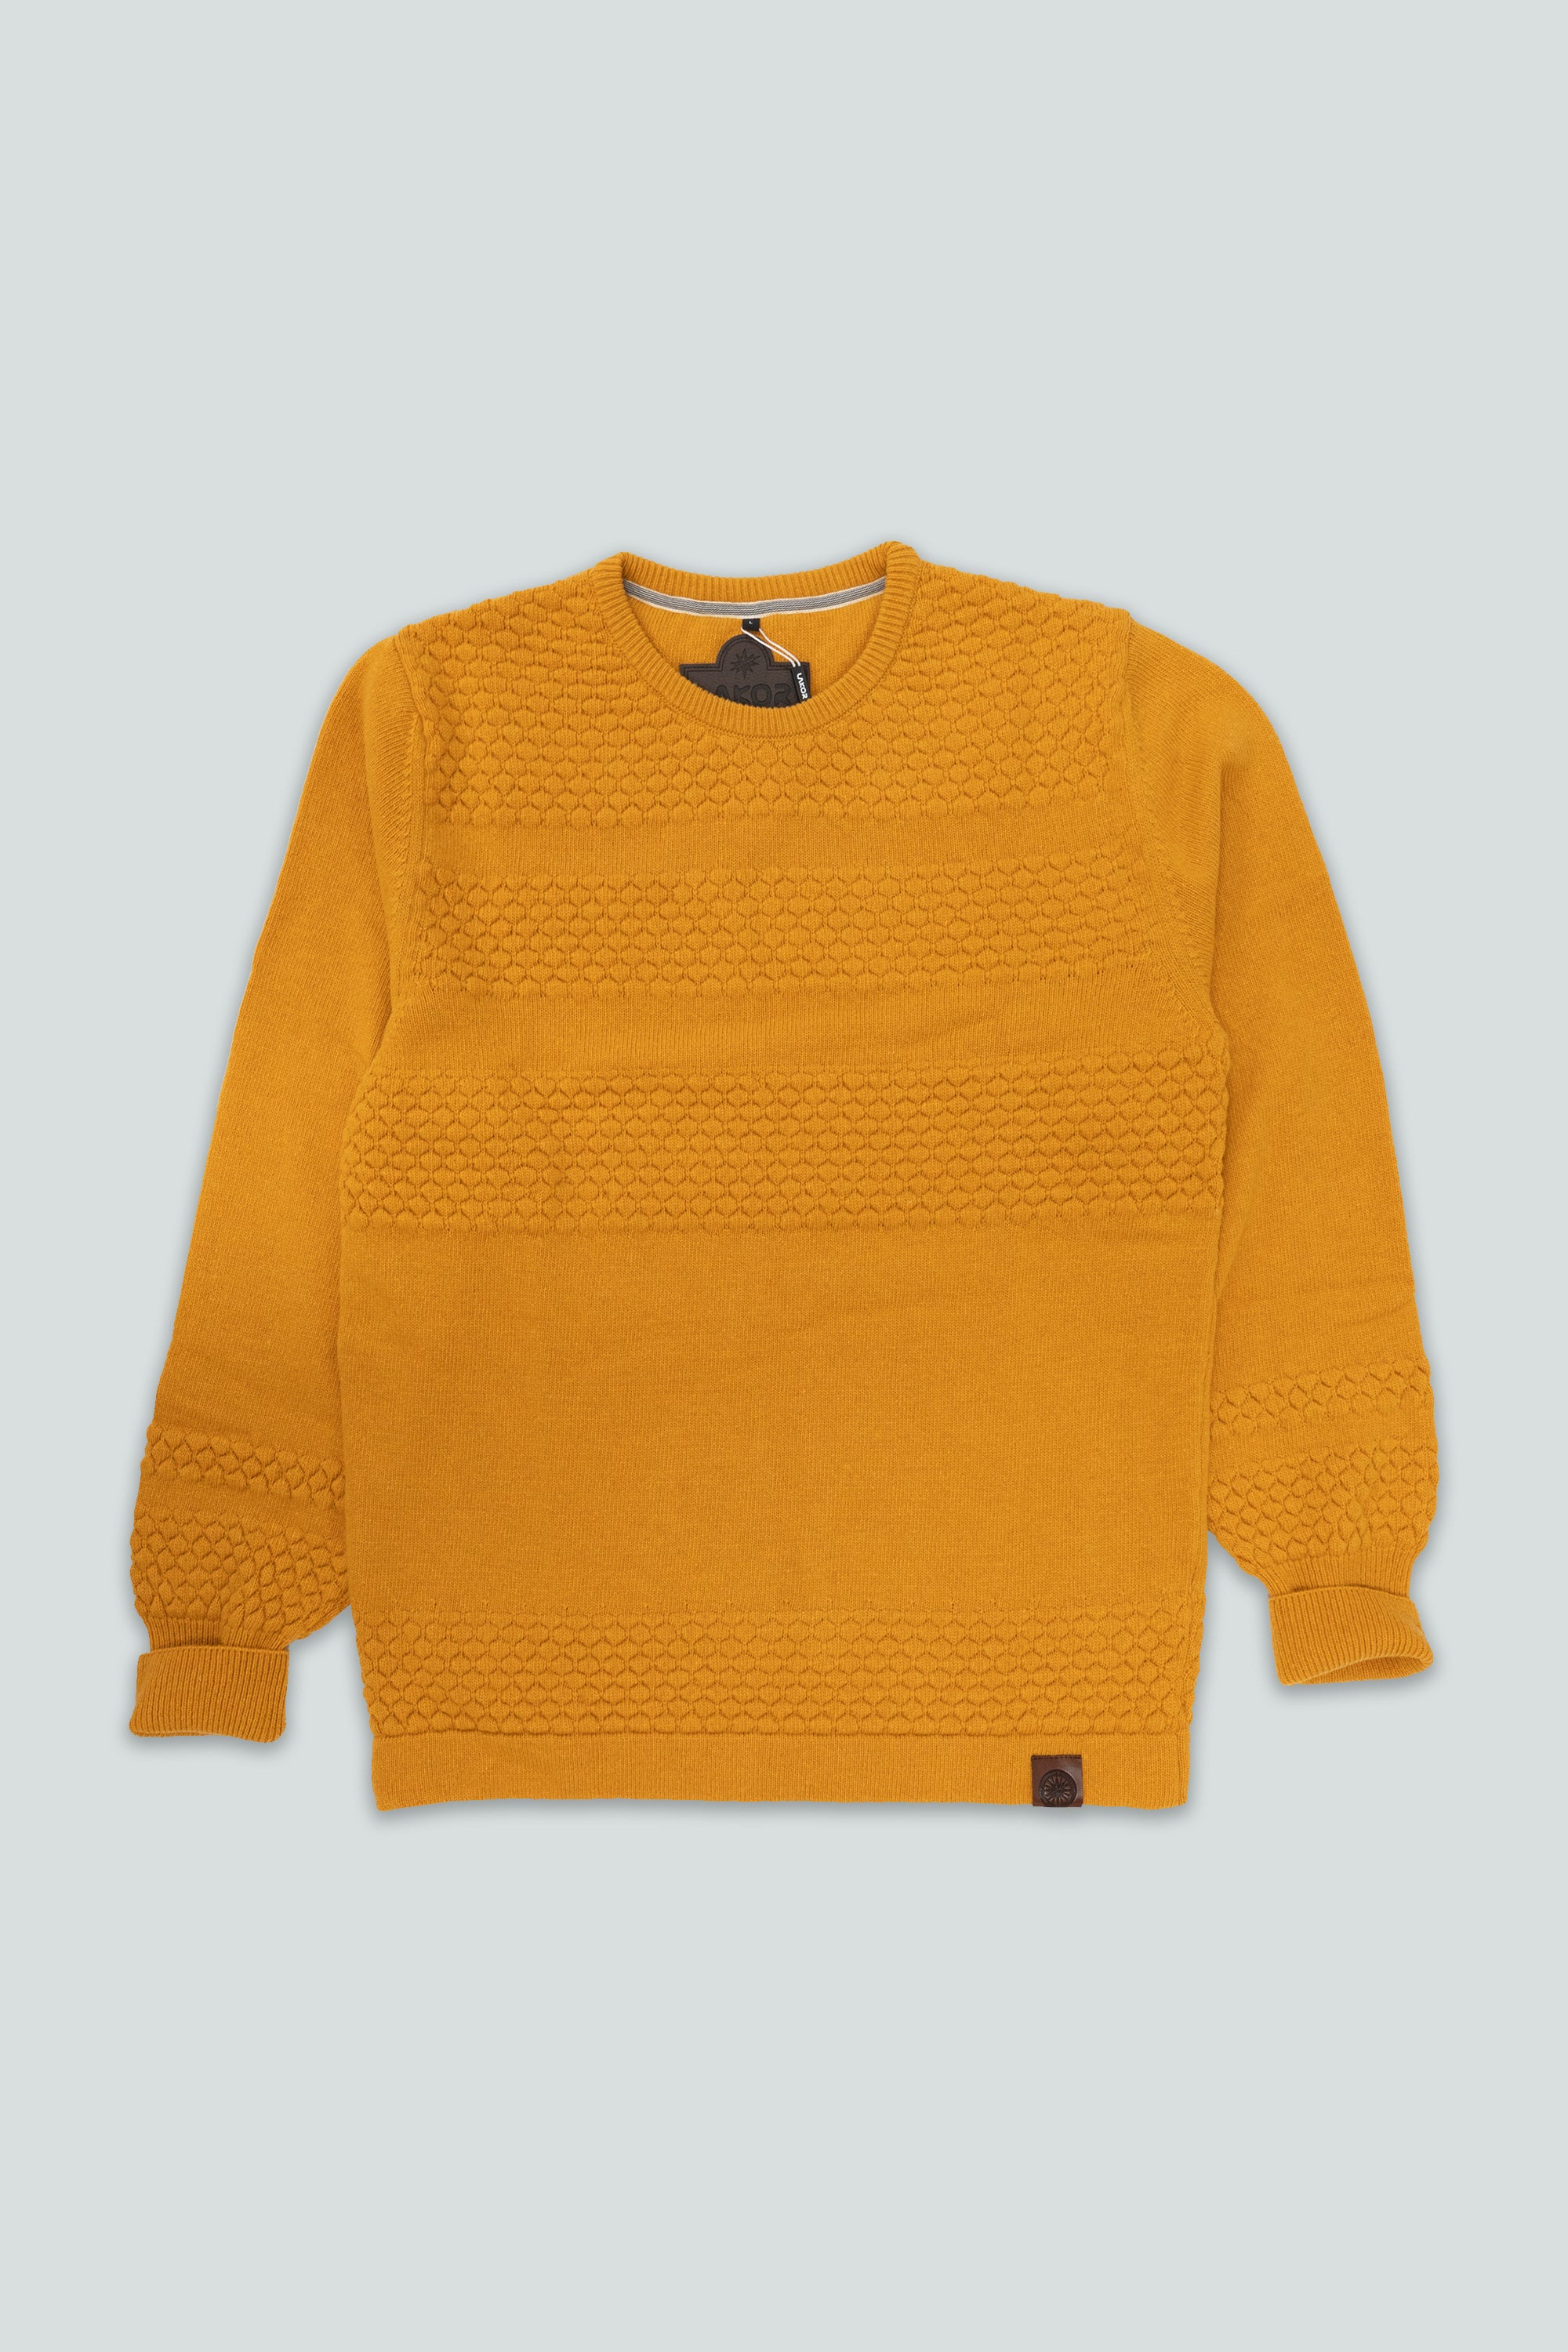 Cod Knit (Yellow)